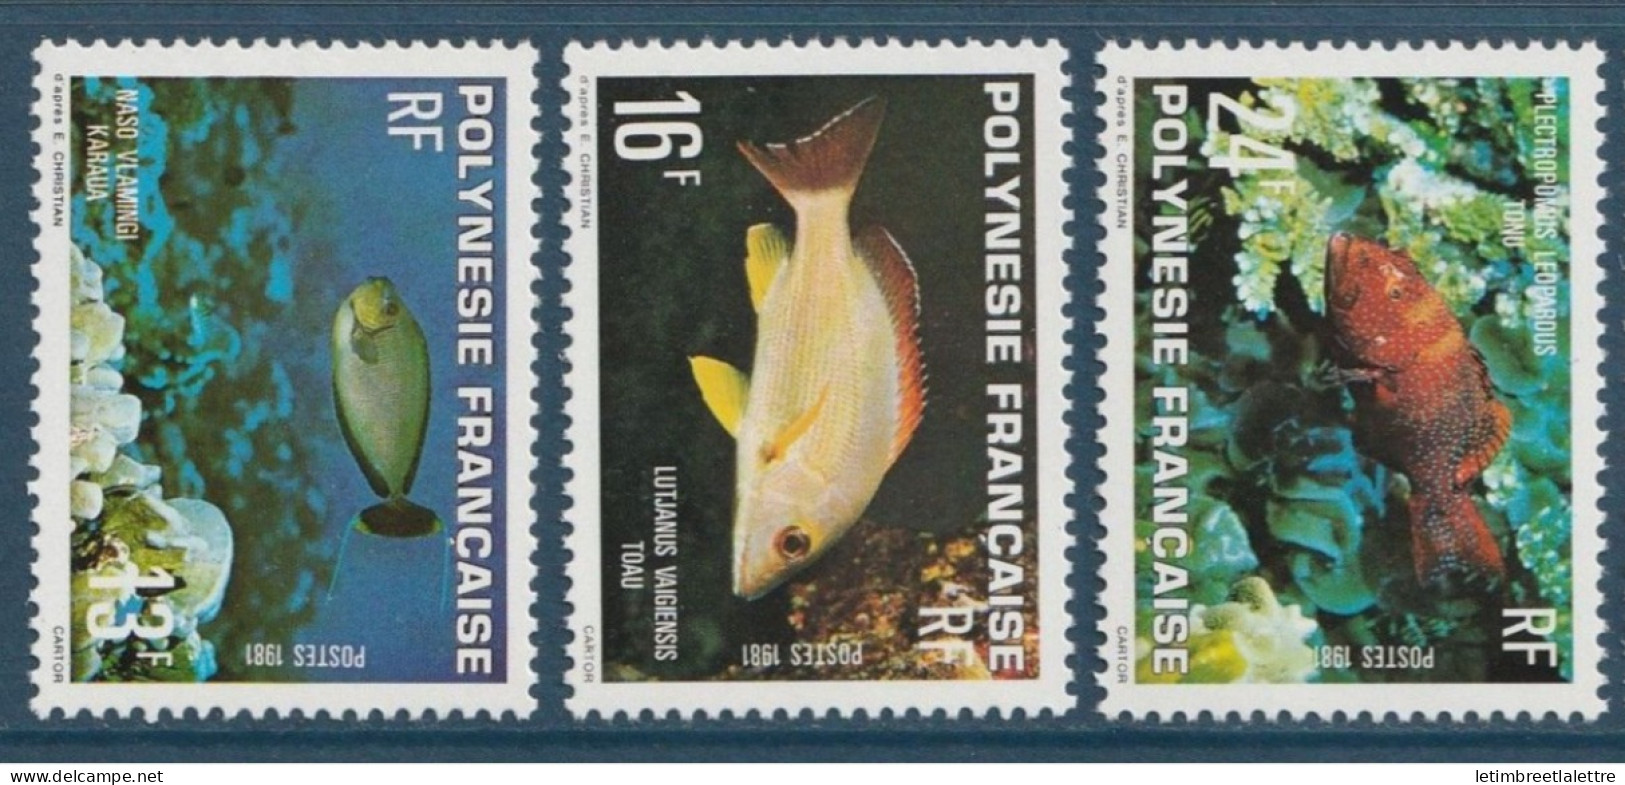 Polynésie Française - YT N° 160 à 162 ** - Neuf Sans Charnière - 1981 - Ungebraucht